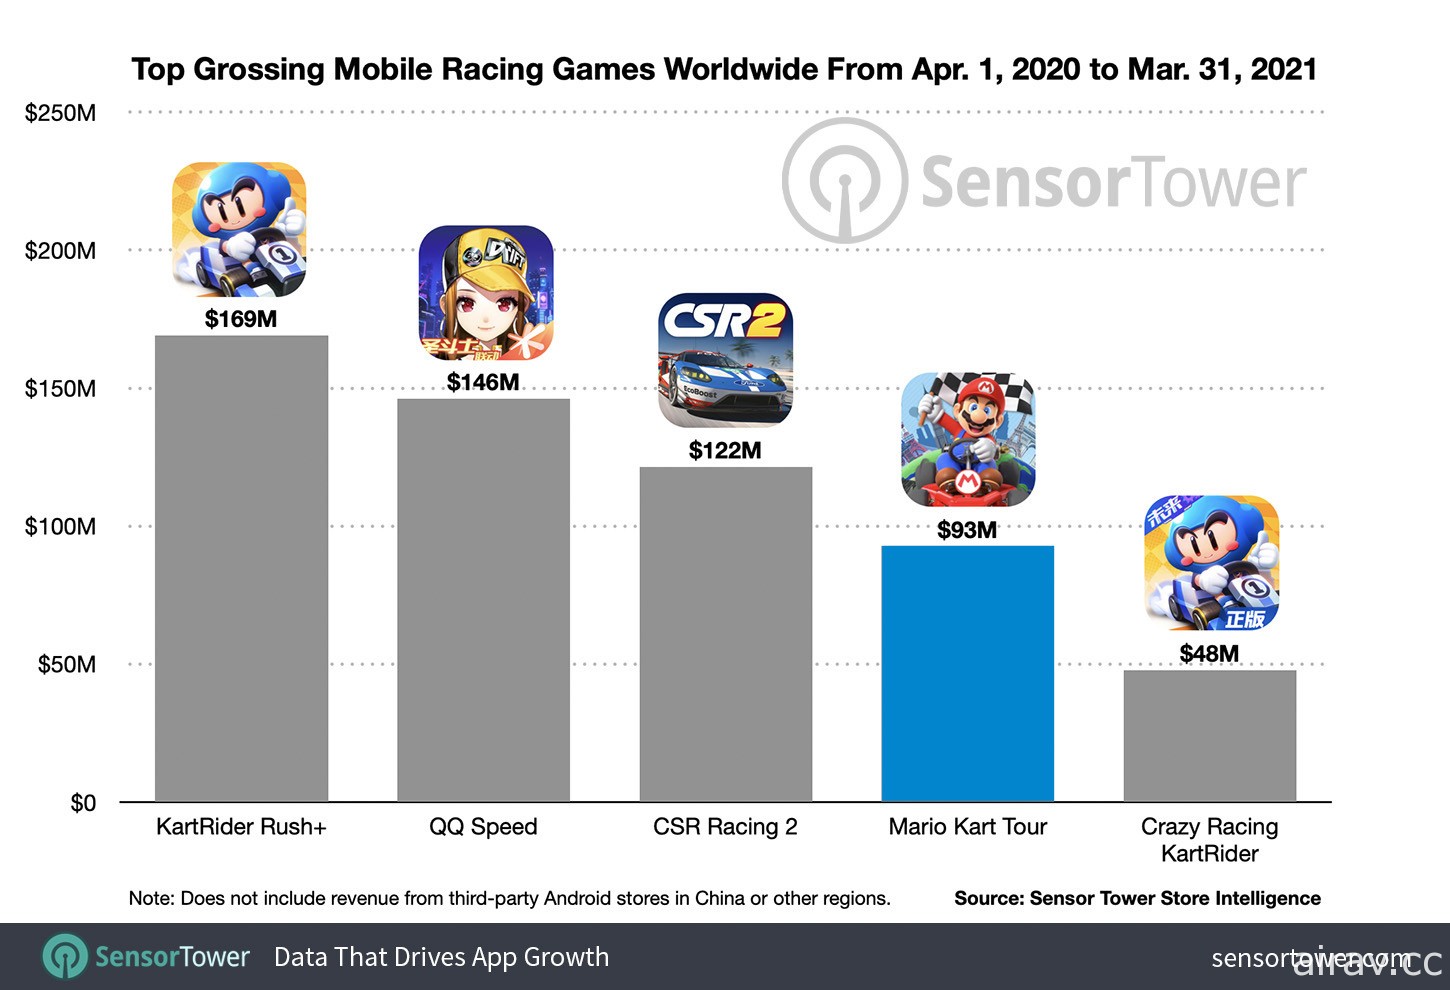 Sensor Tower 指出《玛利欧赛车巡回赛》累计营收达 2 亿美元、下载量超过 2 亿次